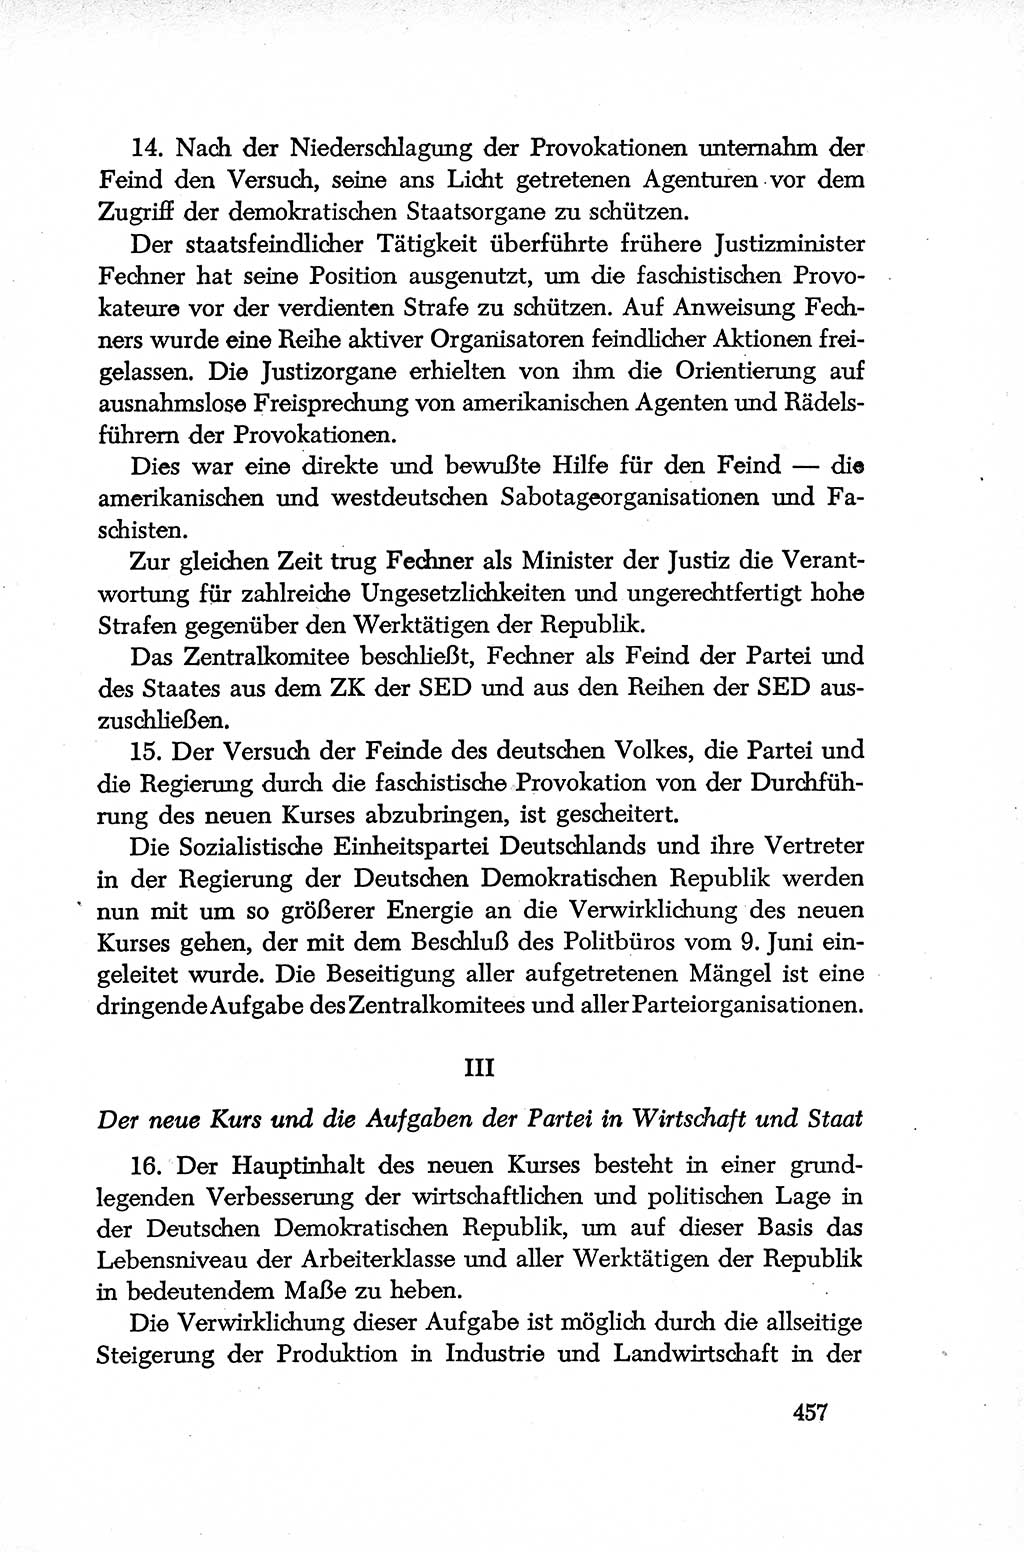 Dokumente der Sozialistischen Einheitspartei Deutschlands (SED) [Deutsche Demokratische Republik (DDR)] 1952-1953, Seite 457 (Dok. SED DDR 1952-1953, S. 457)